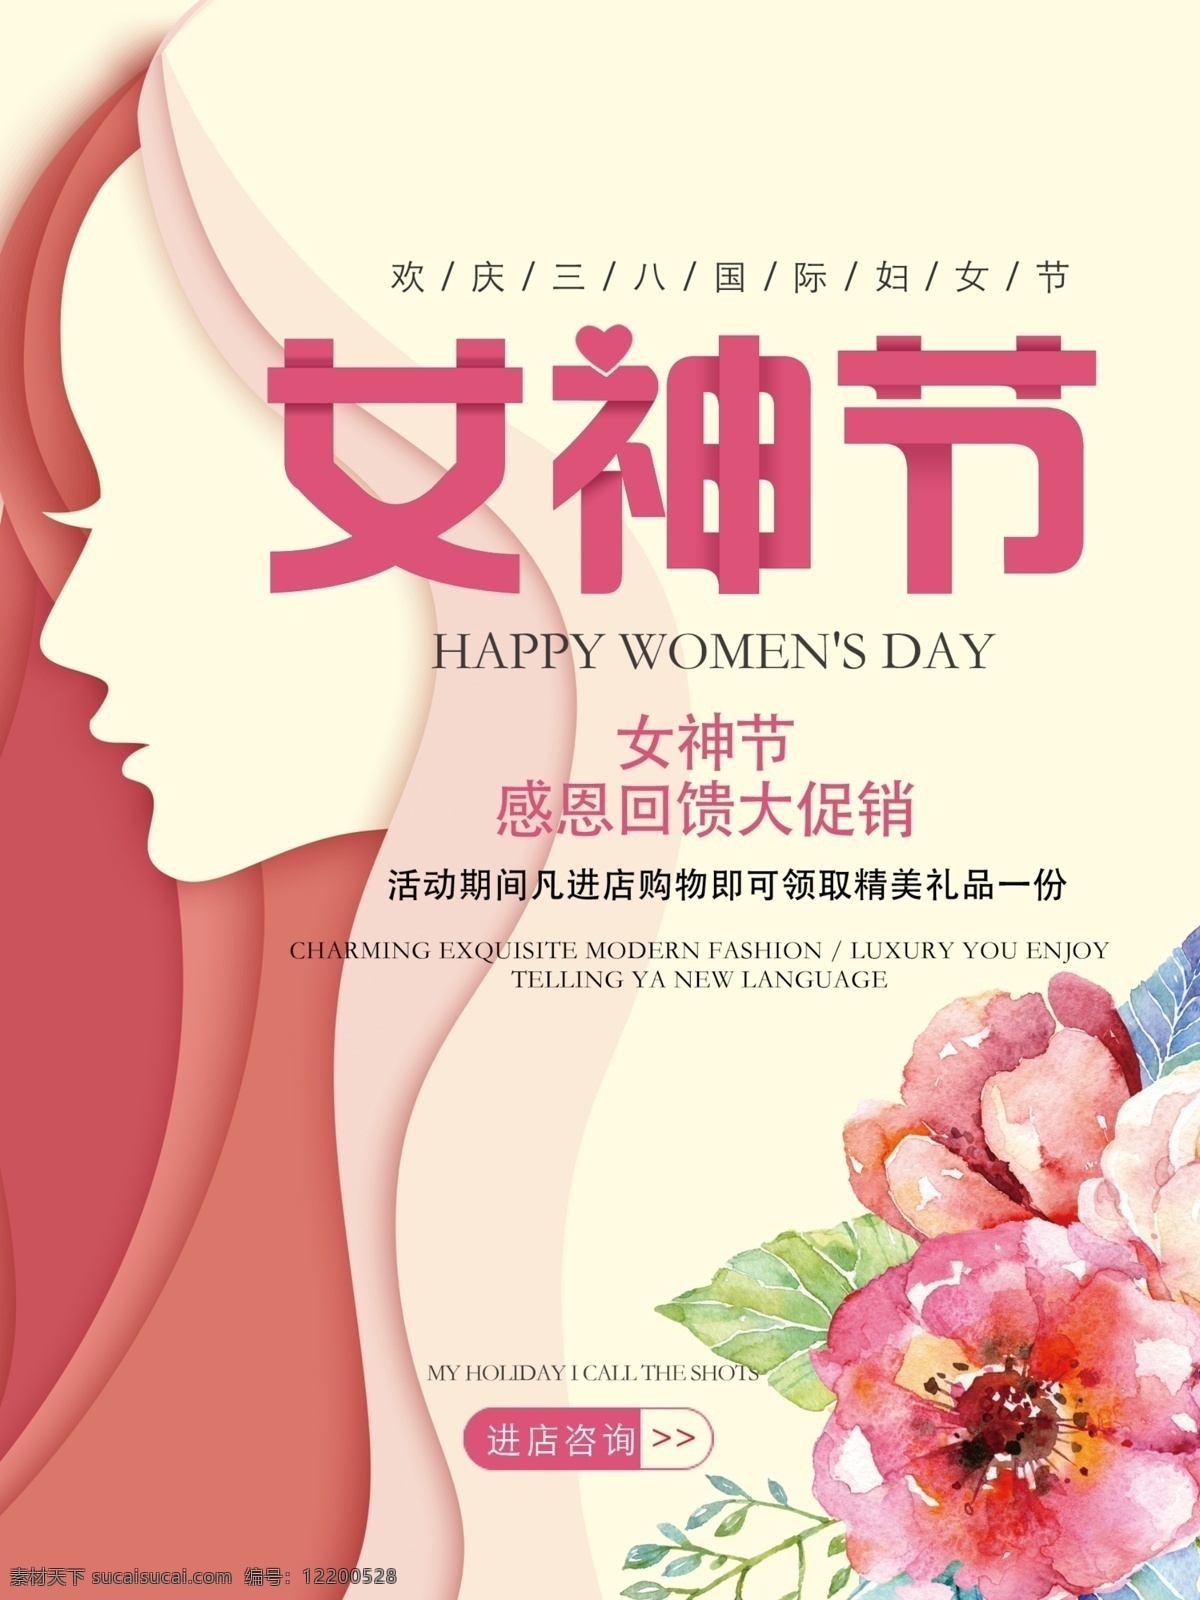 女神 节 感恩 回馈 妇女节 女神节 三八妇女节 国际妇女节 欢庆三八